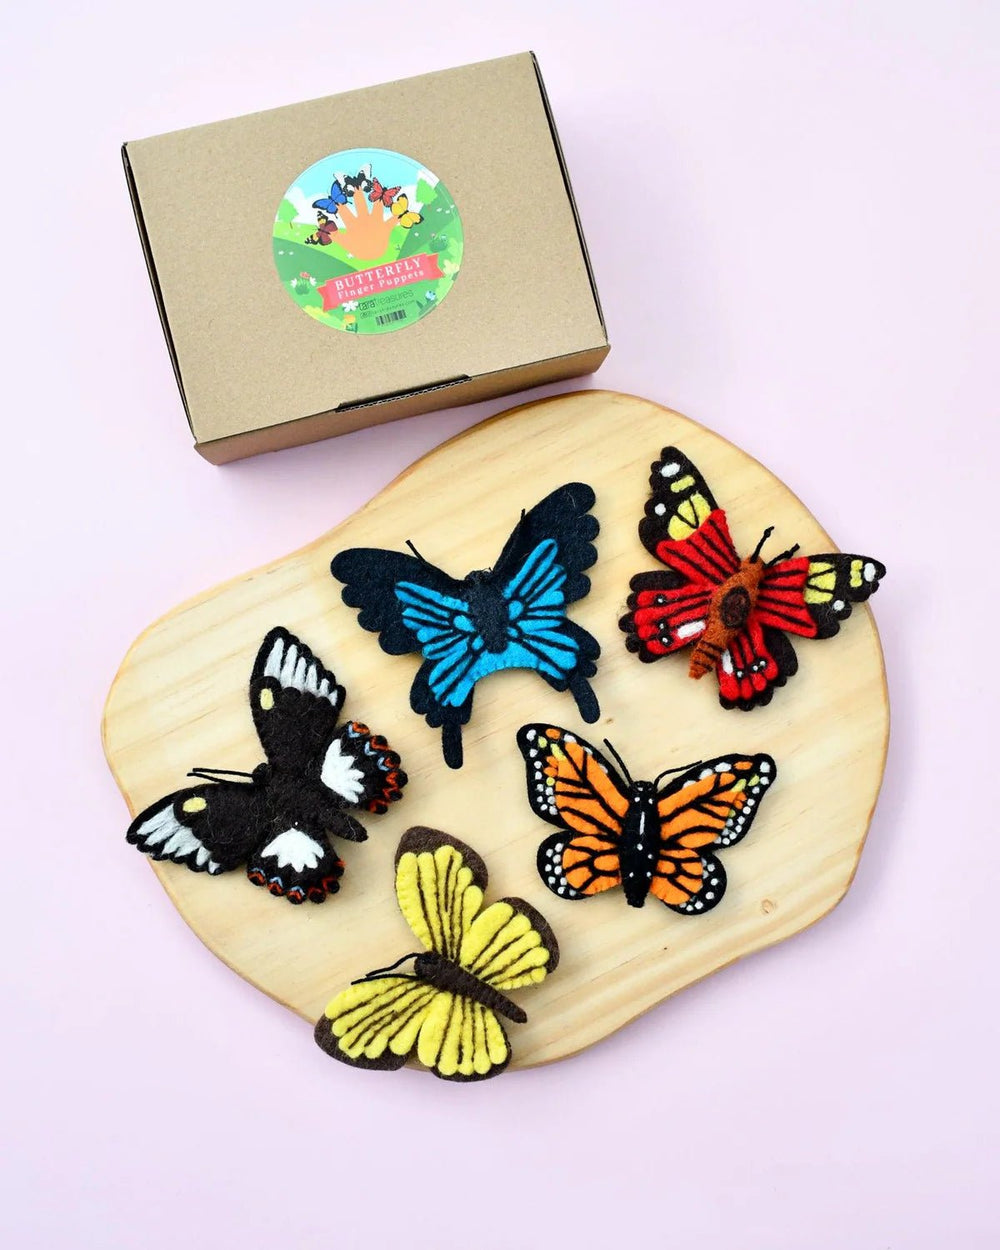 Tara Treasures Butterflies Finger Puppet Set - #HolaNanu#NDIS #creativekids